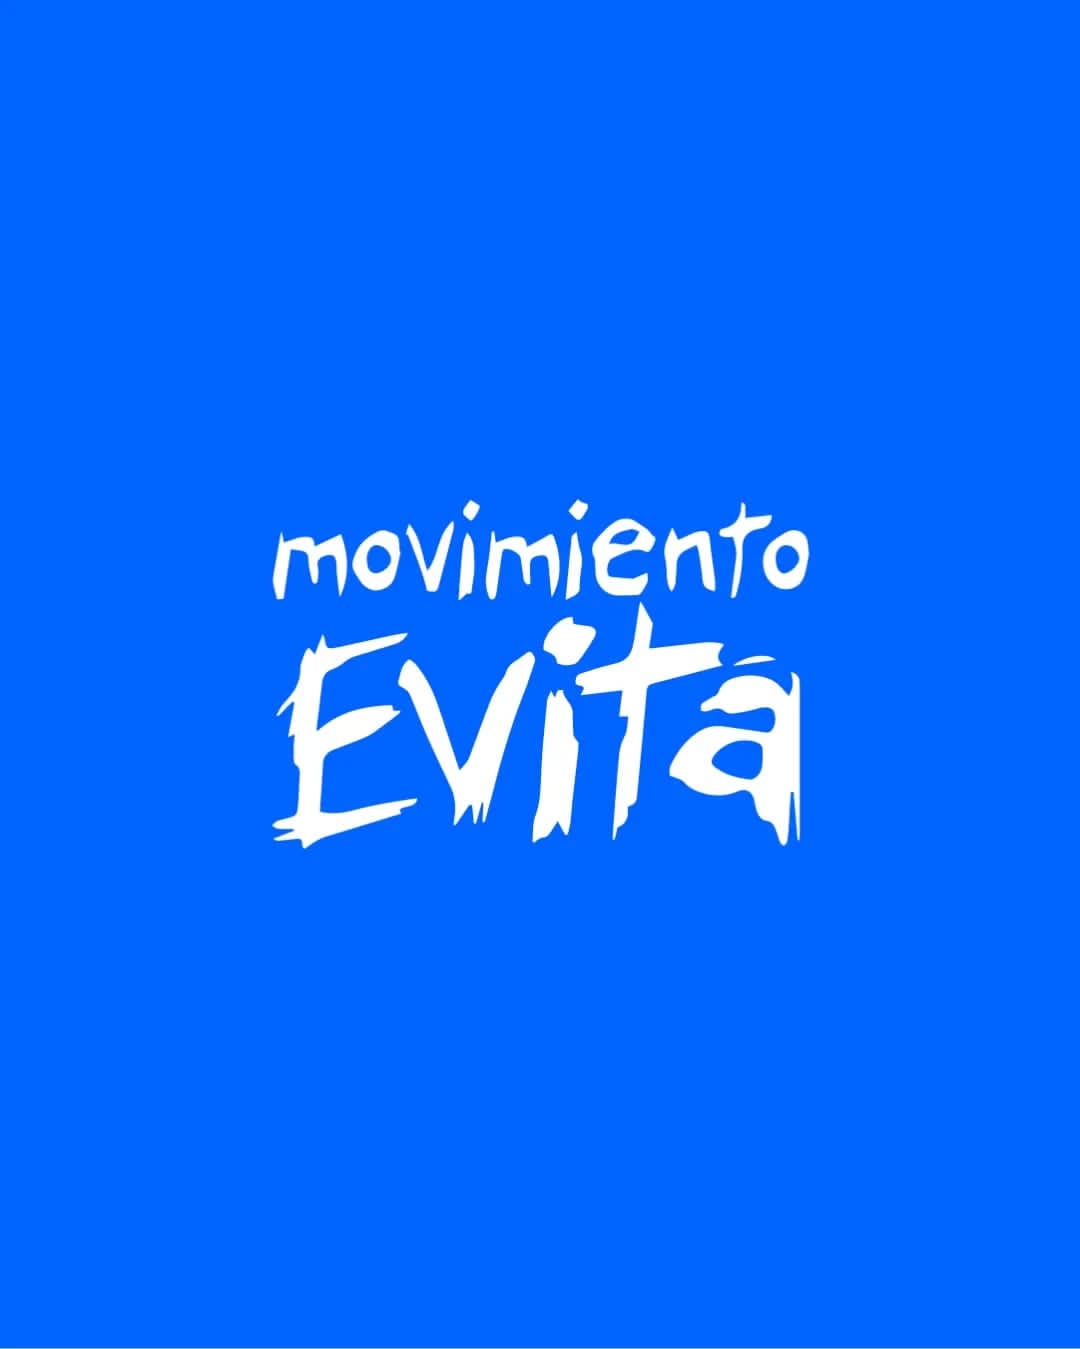 Movimiento Evita: "Frente a cada avance, una respuesta; frente a cada provocación, inteligencia" imagen-22